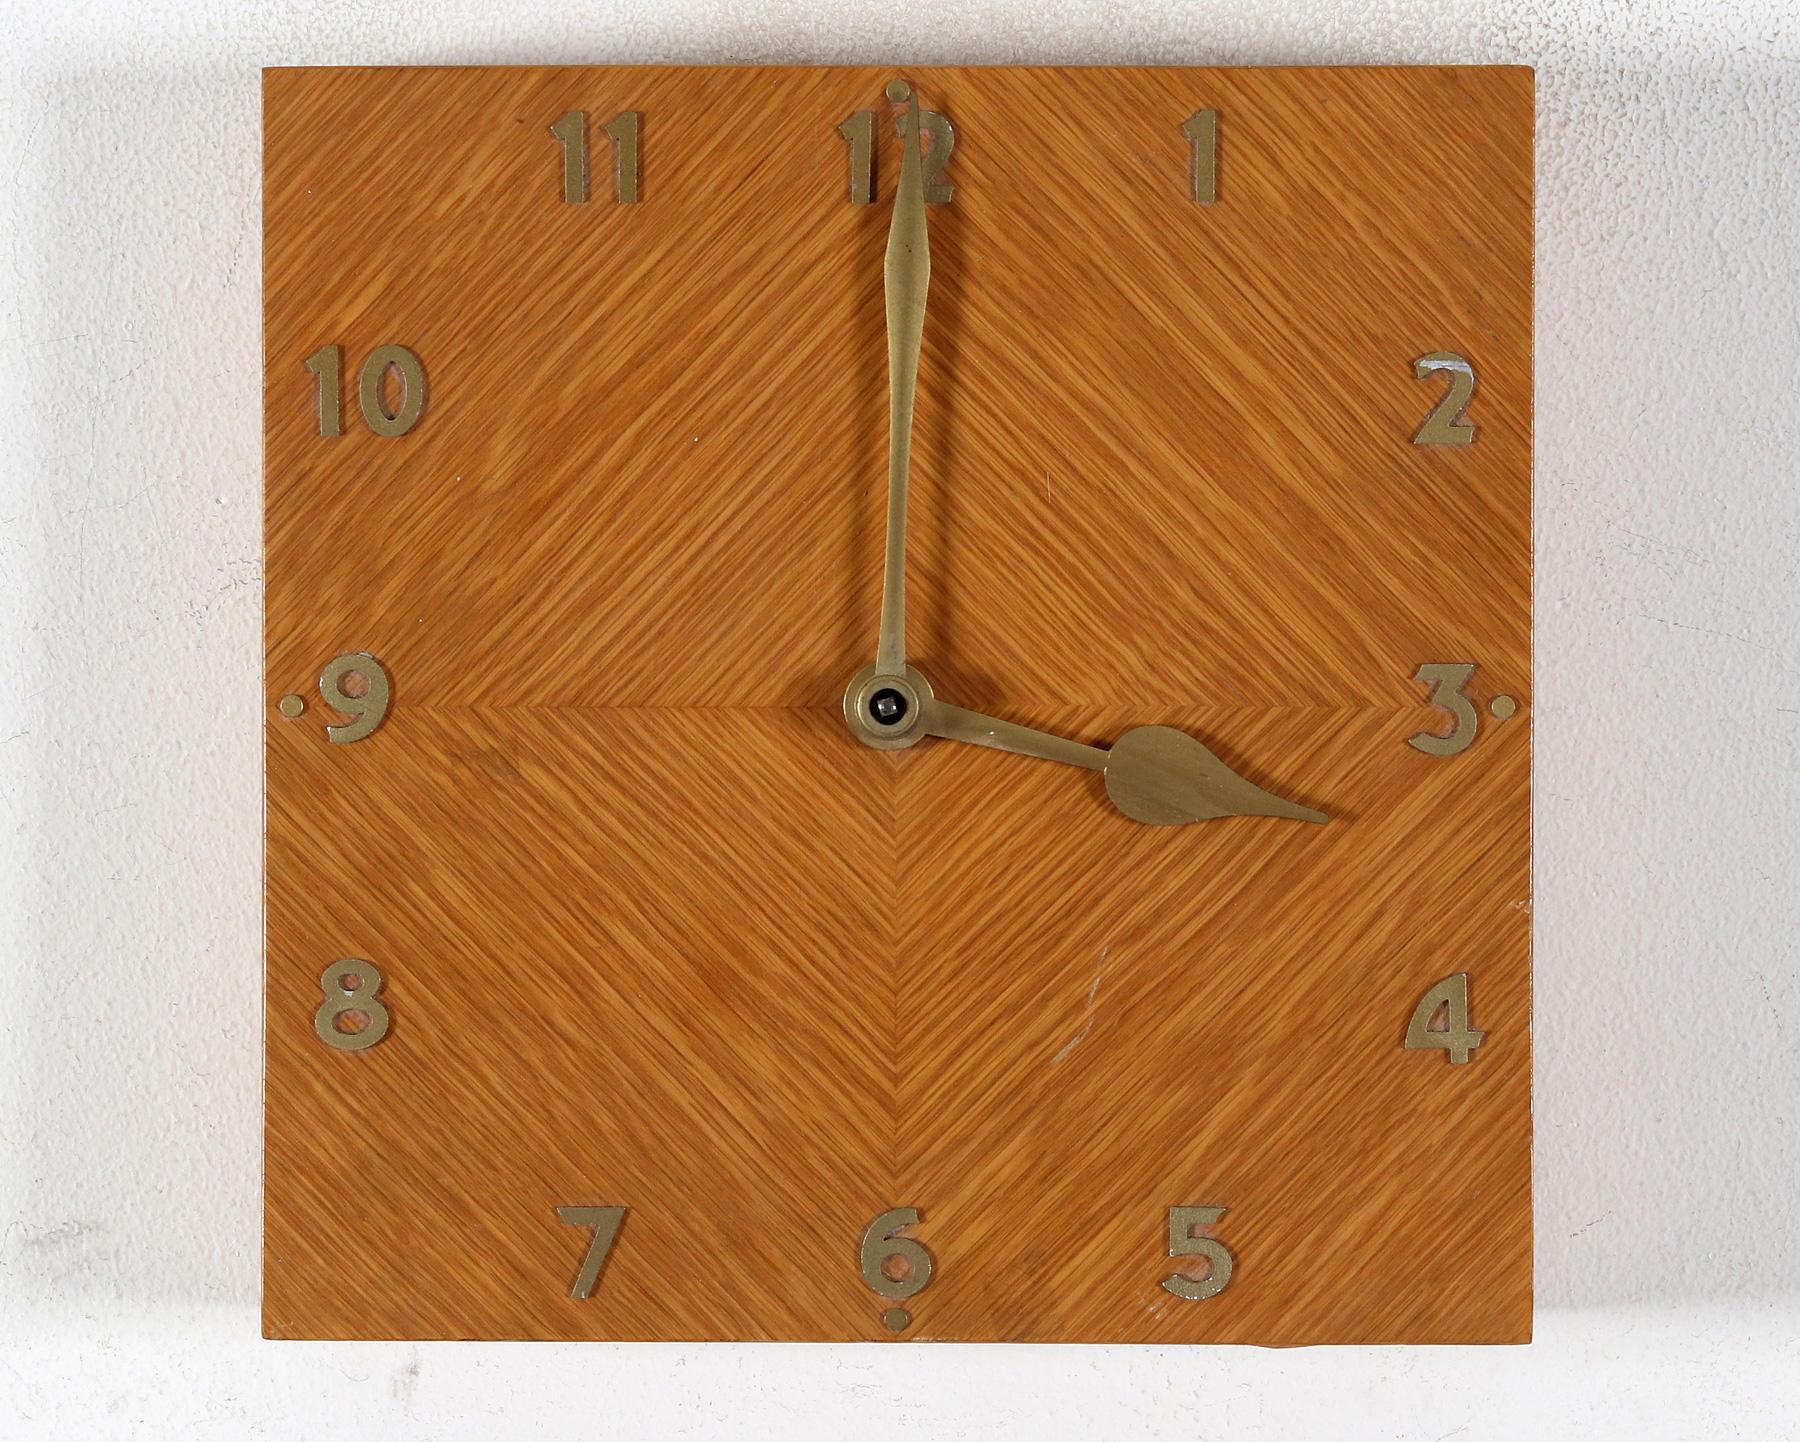 Cadre en bois avec cadran en bois et aiguilles en laiton, chiffres et index. Fabriquée dans les années 1930 par Zenith en Suisse. 
Parfait état de fonctionnement d'origine et après une révision professionnelle.